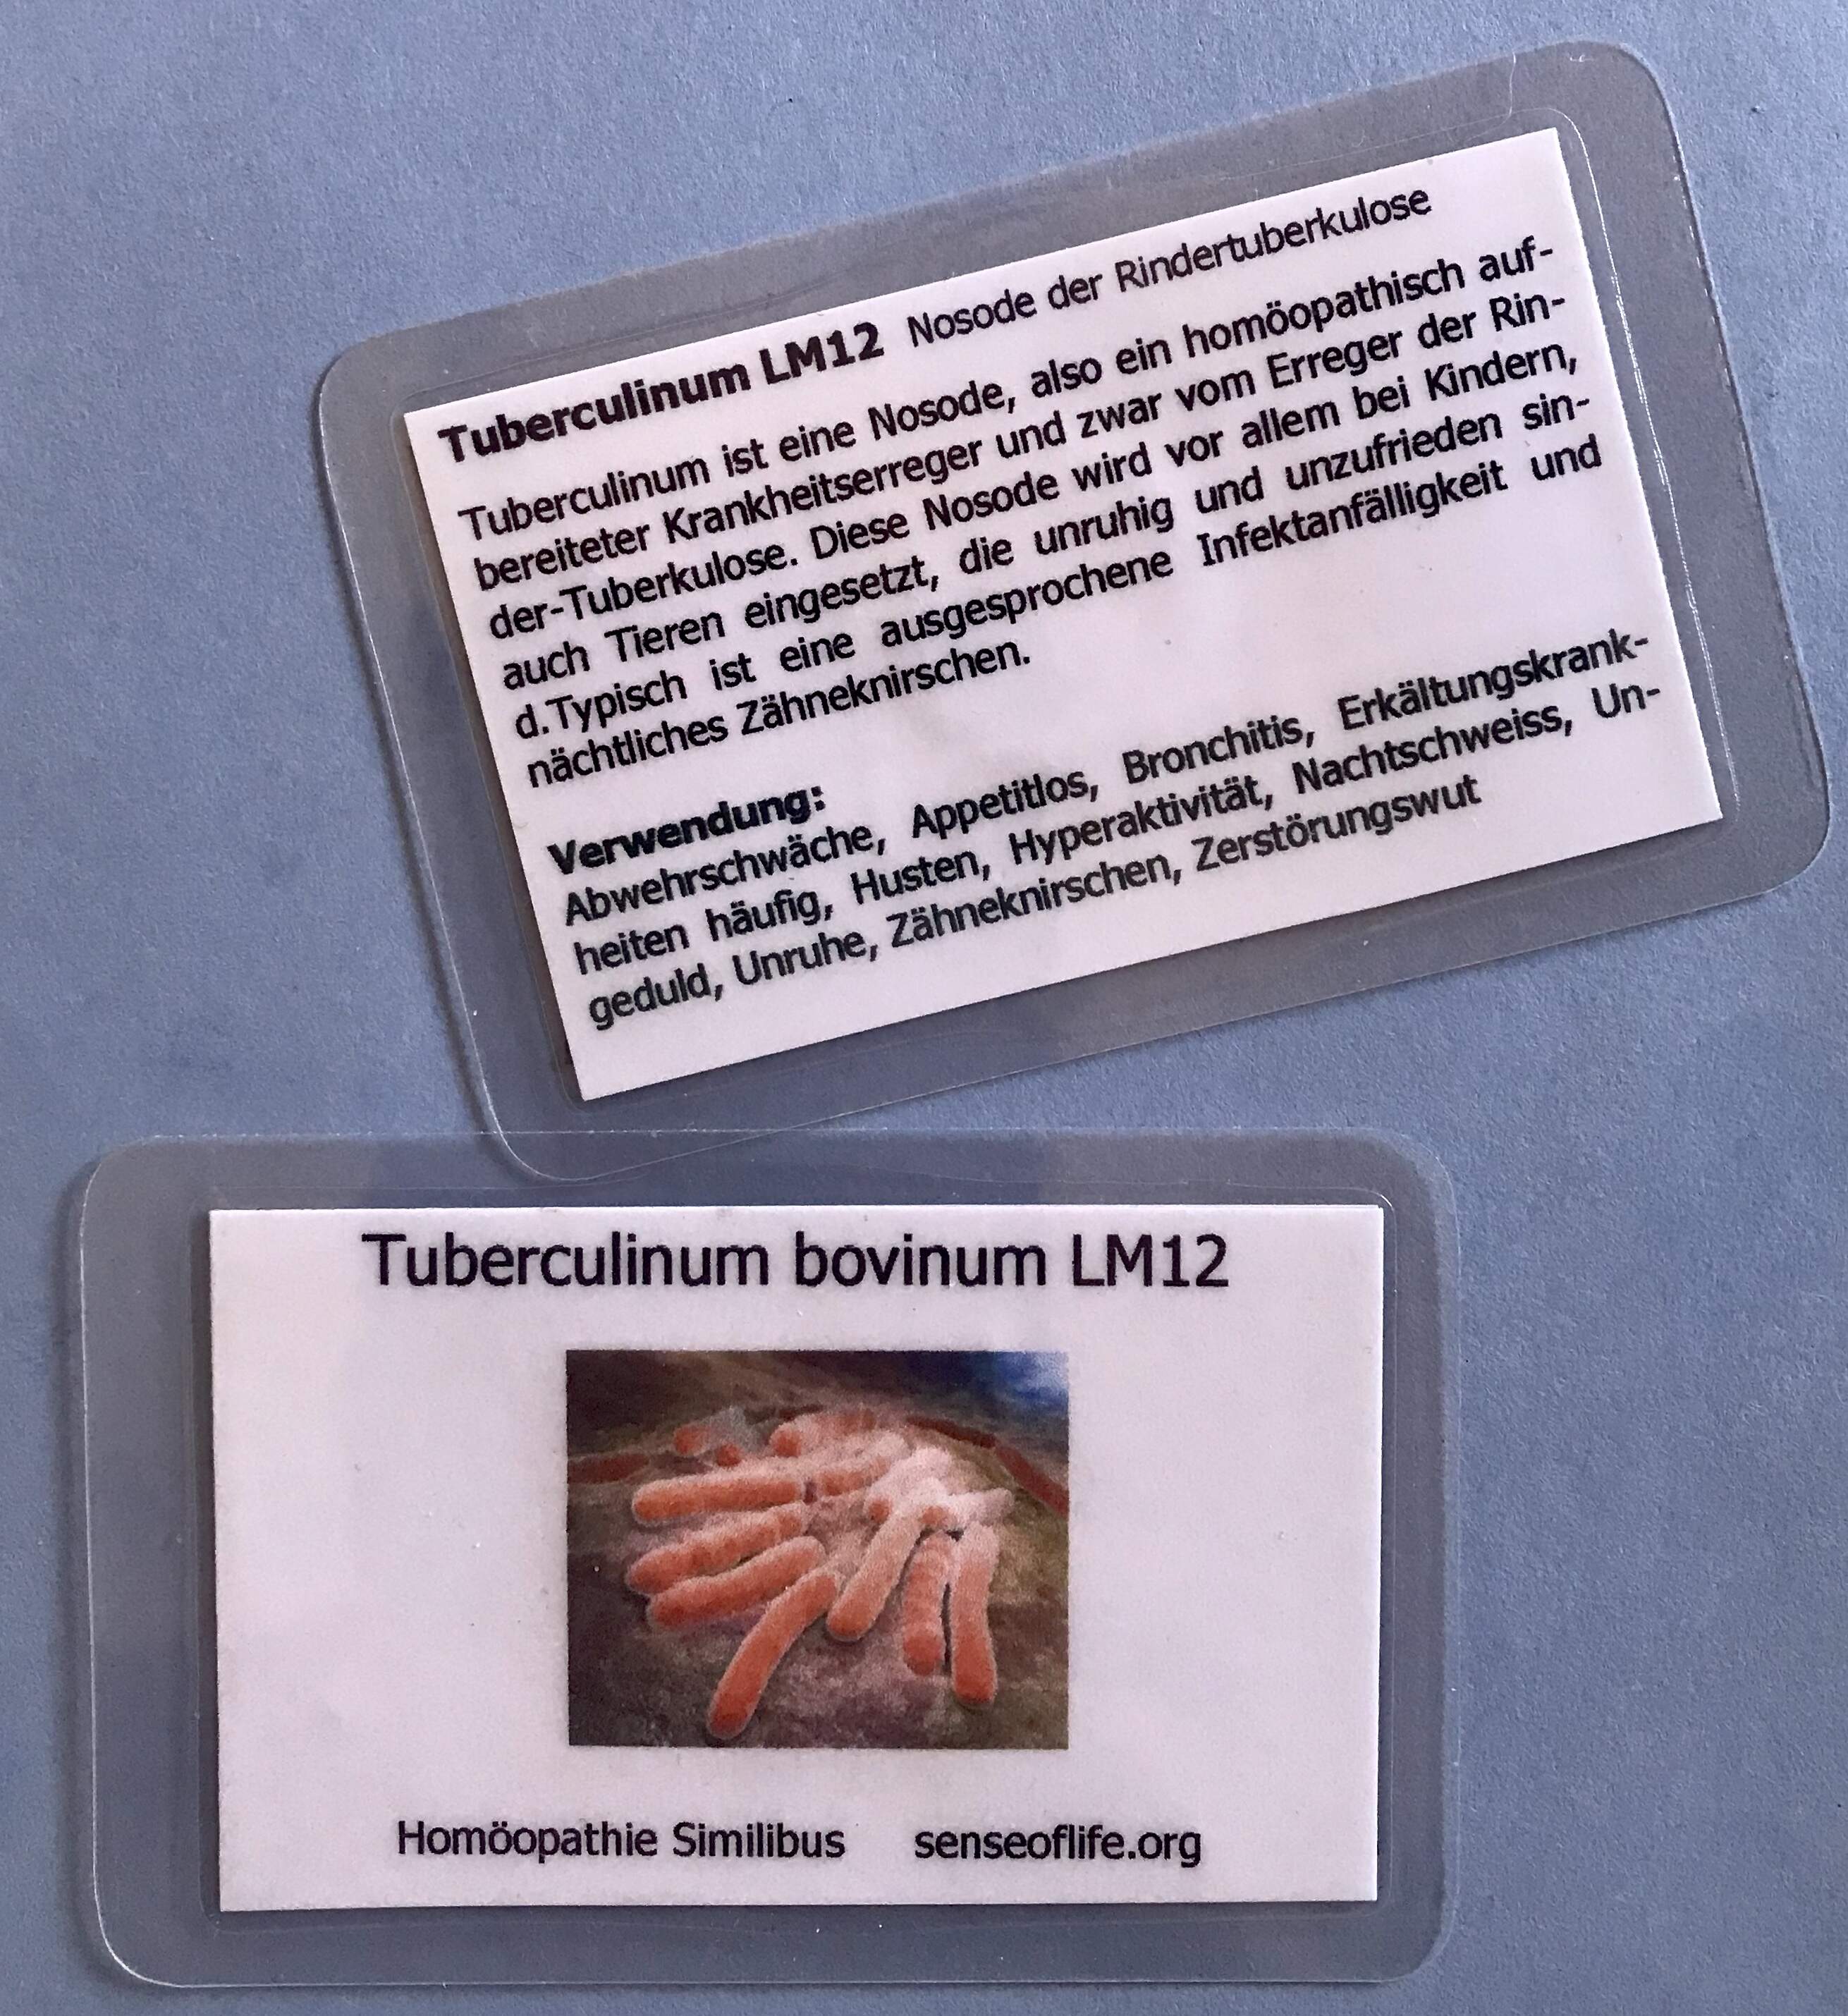 Tuberculinum Similibus-Bio-Chip